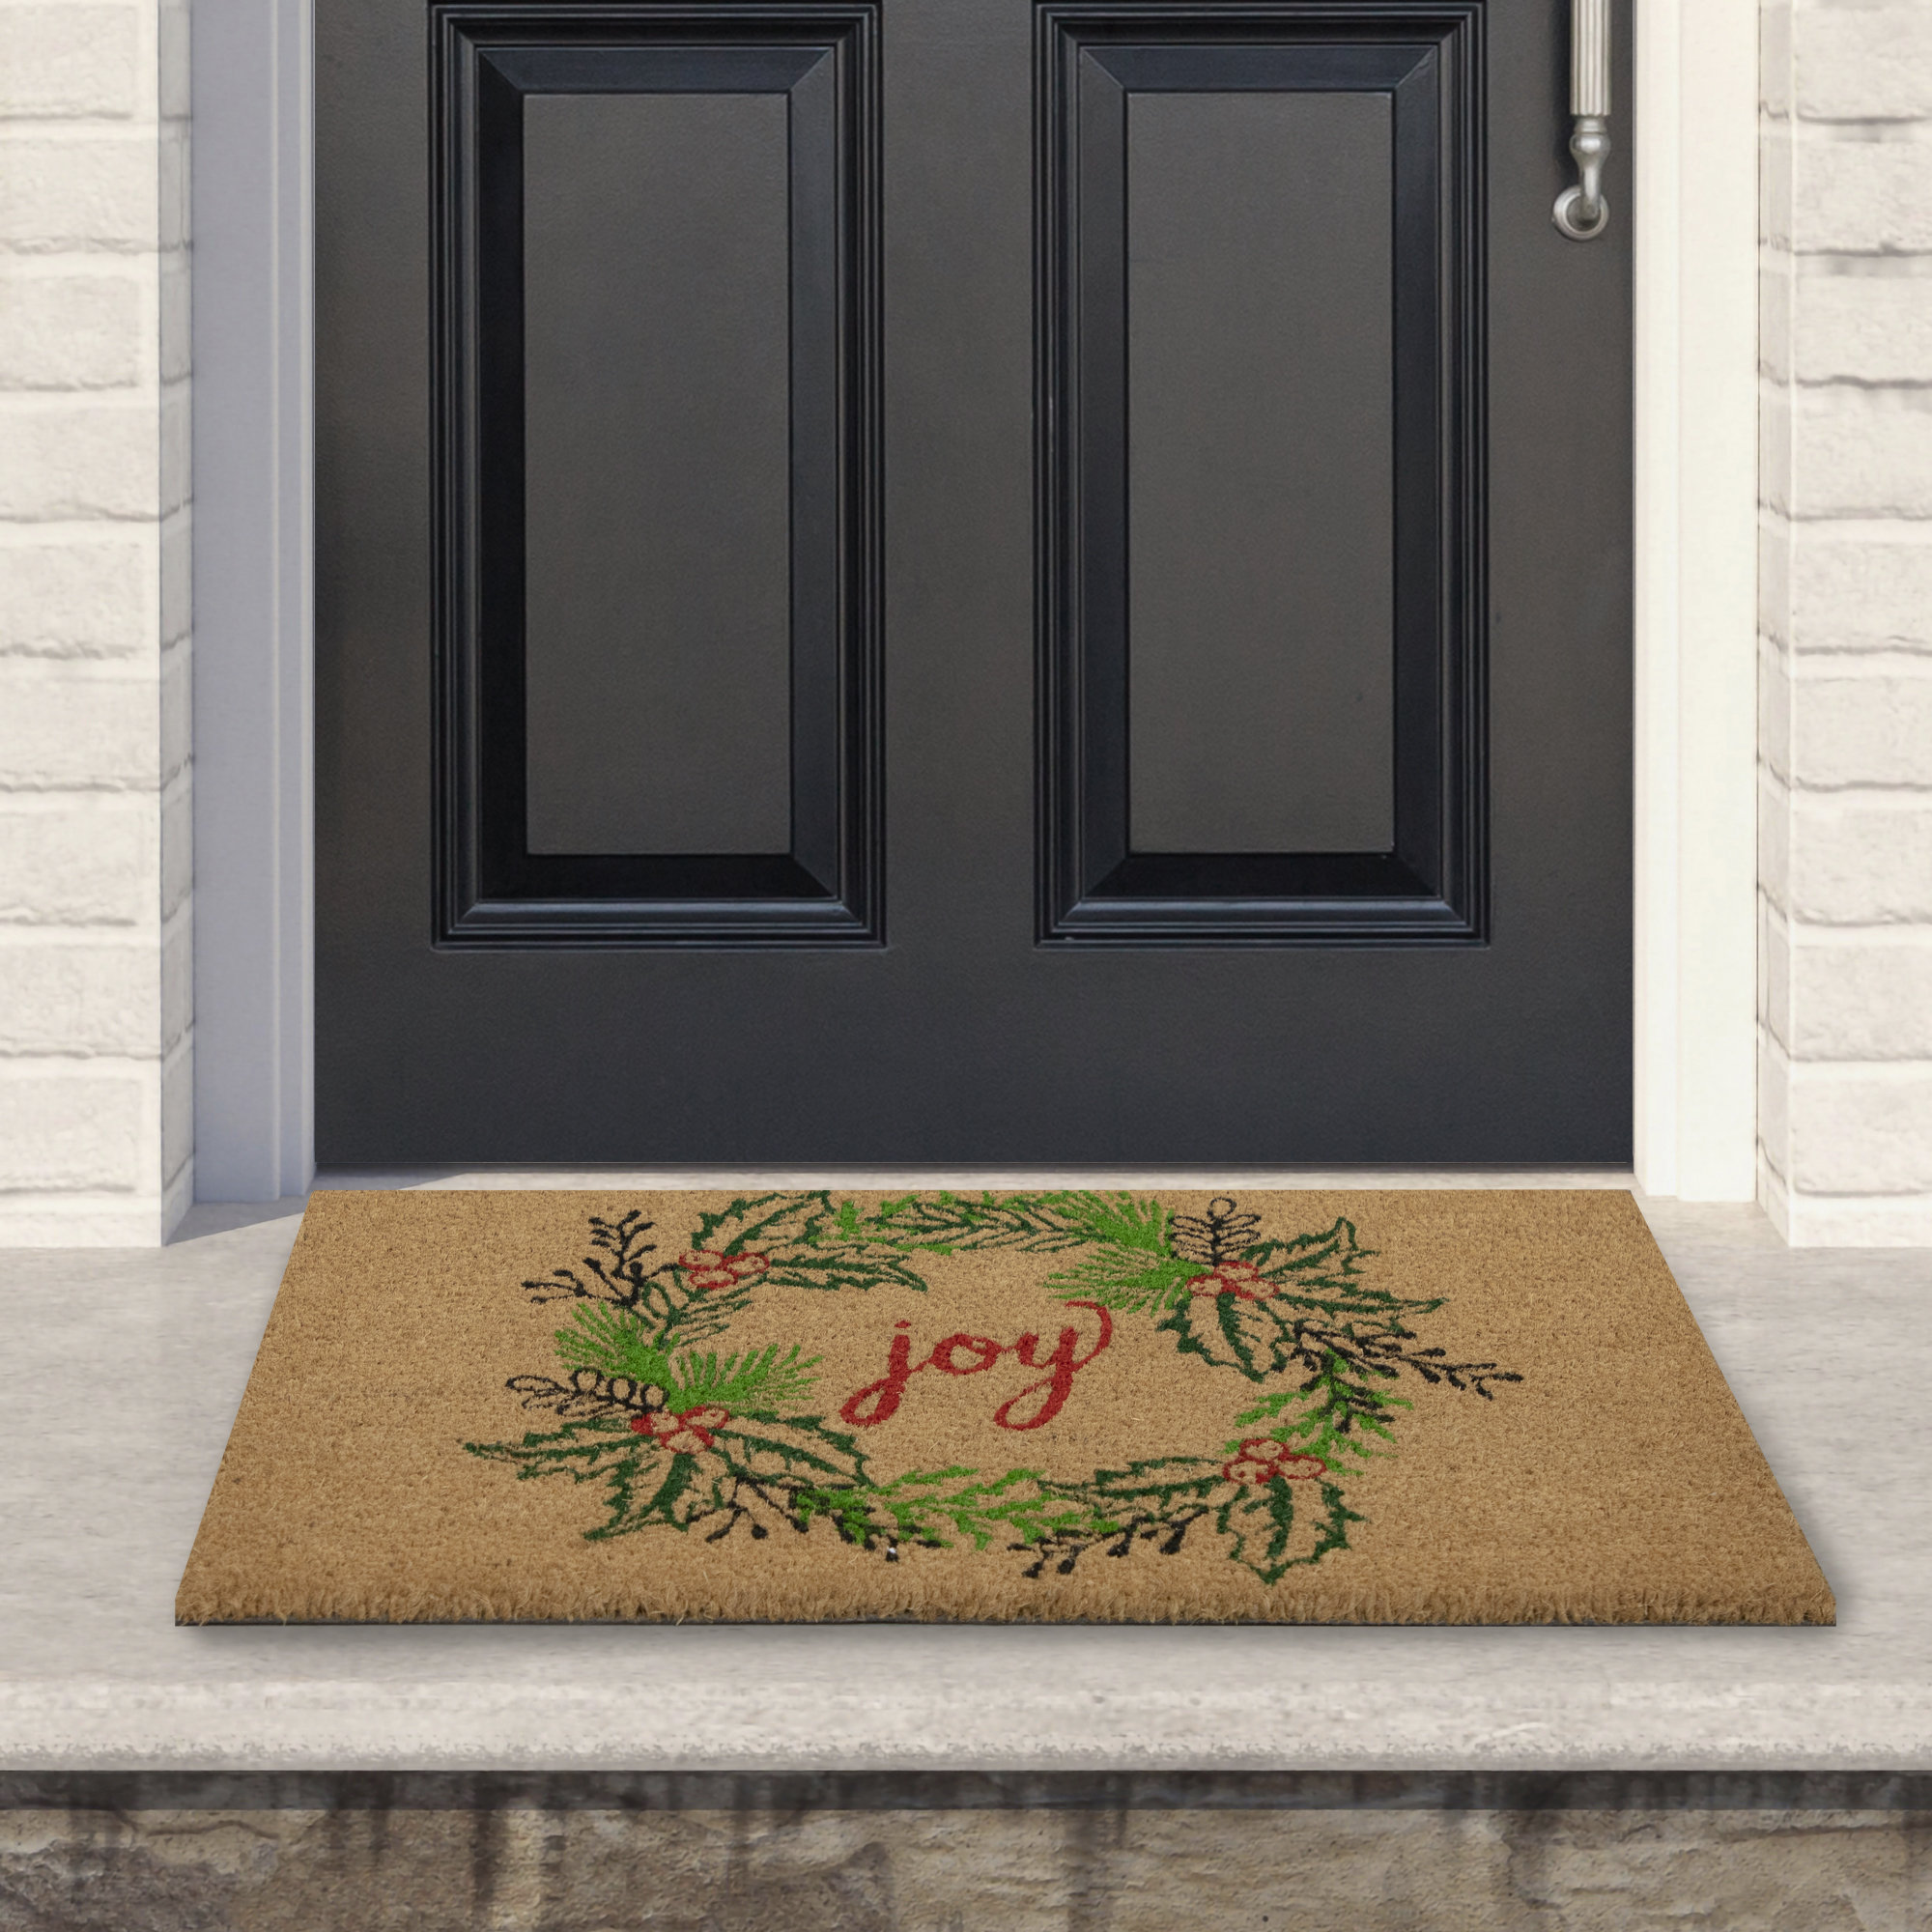 Home'' Outdoor Coir Doormat 18 X 30